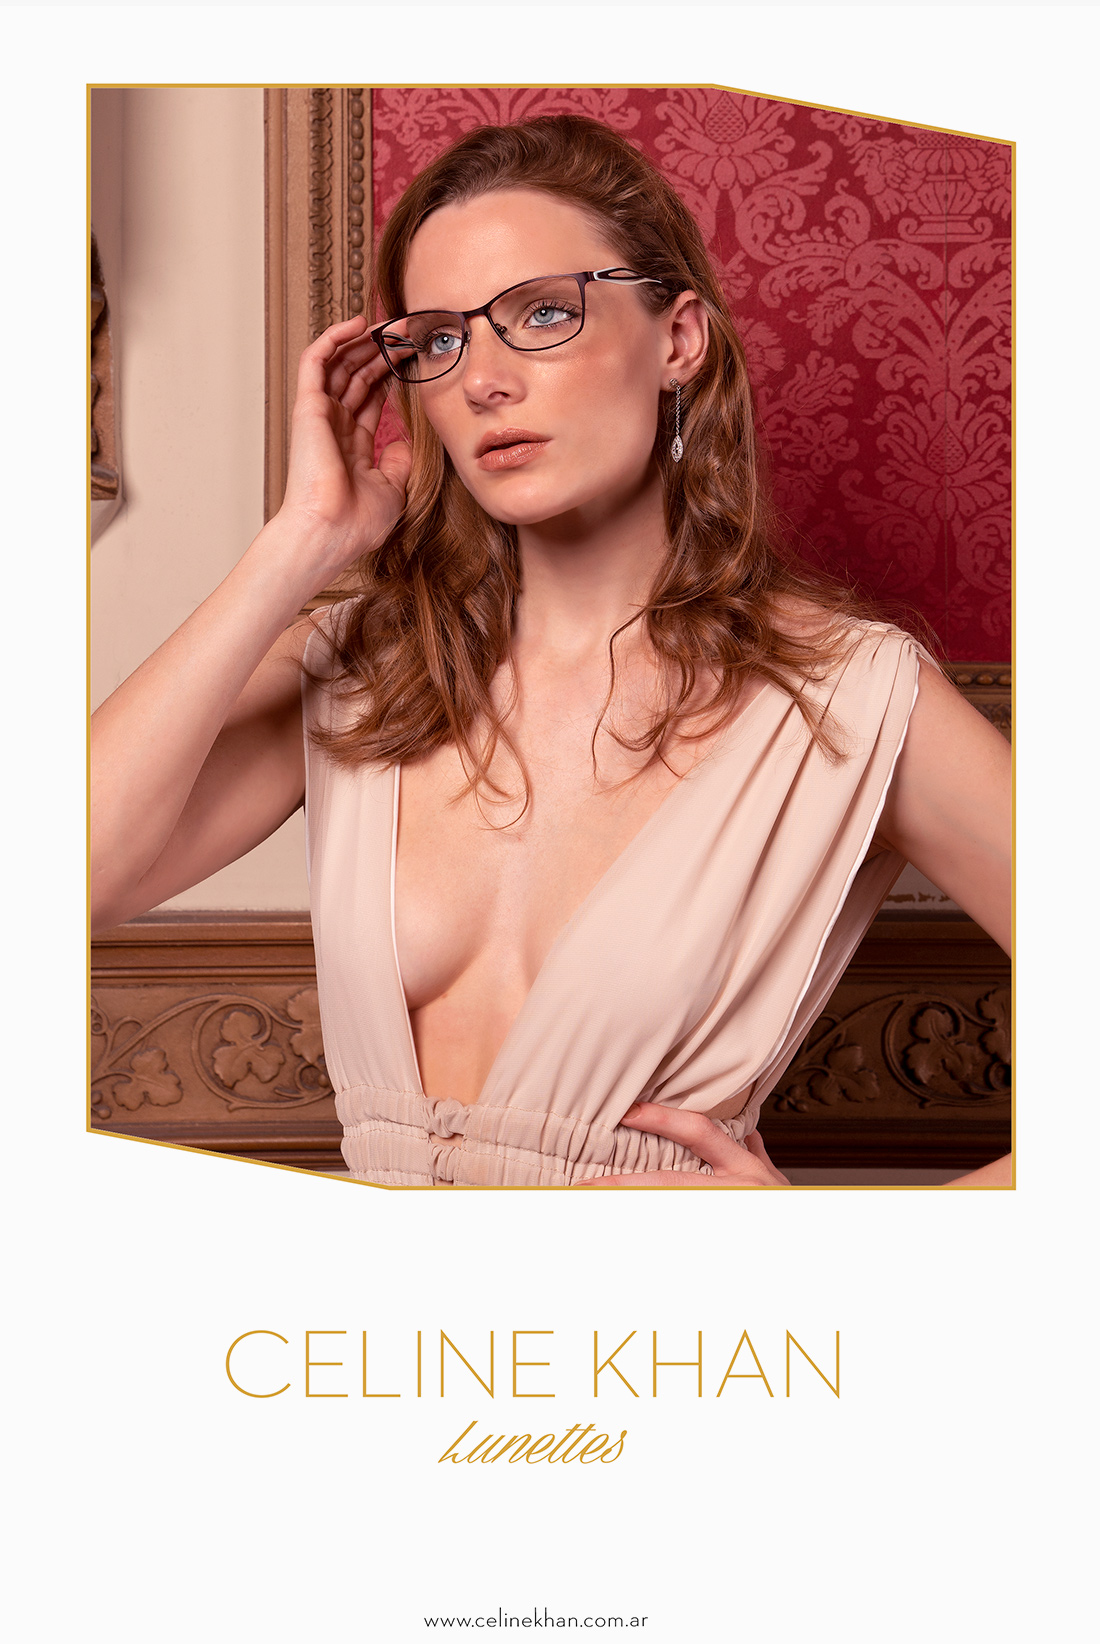 Celine Khan 2018